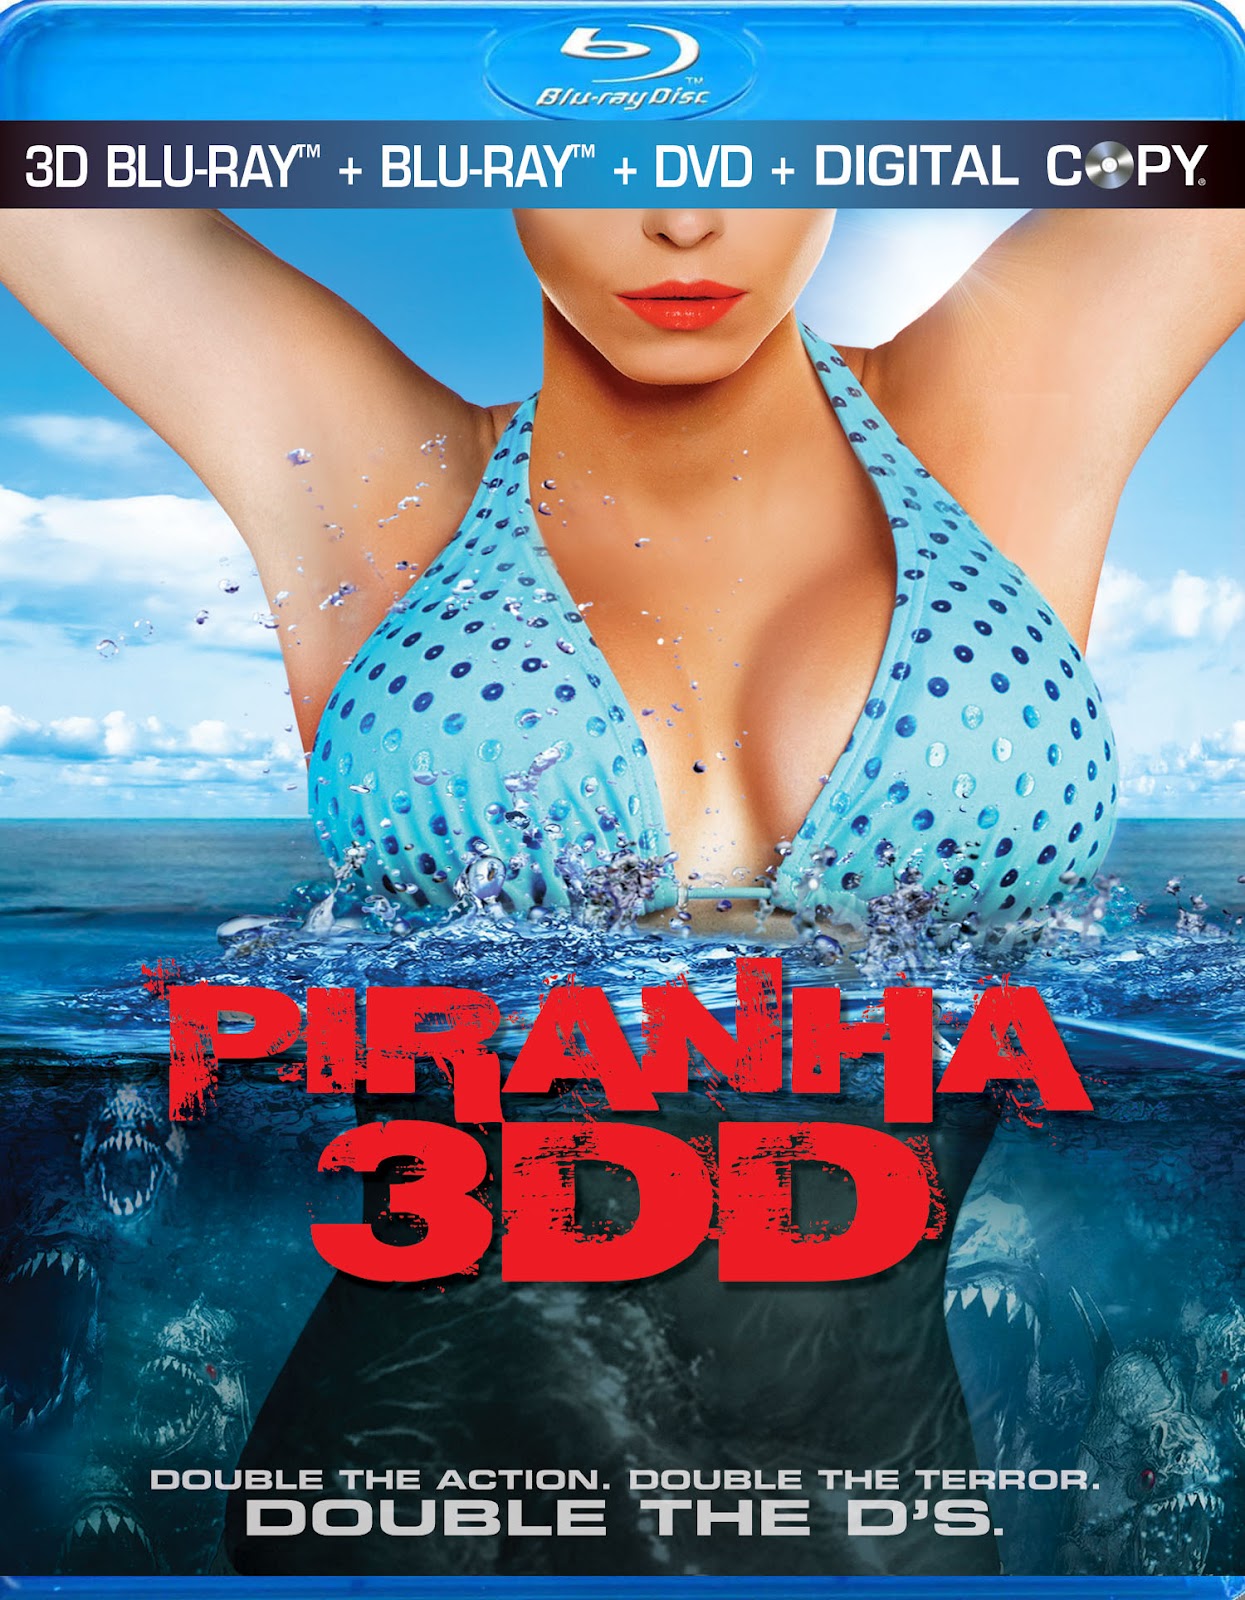 HQ Piranha 3DD Wallpapers | File 404.03Kb